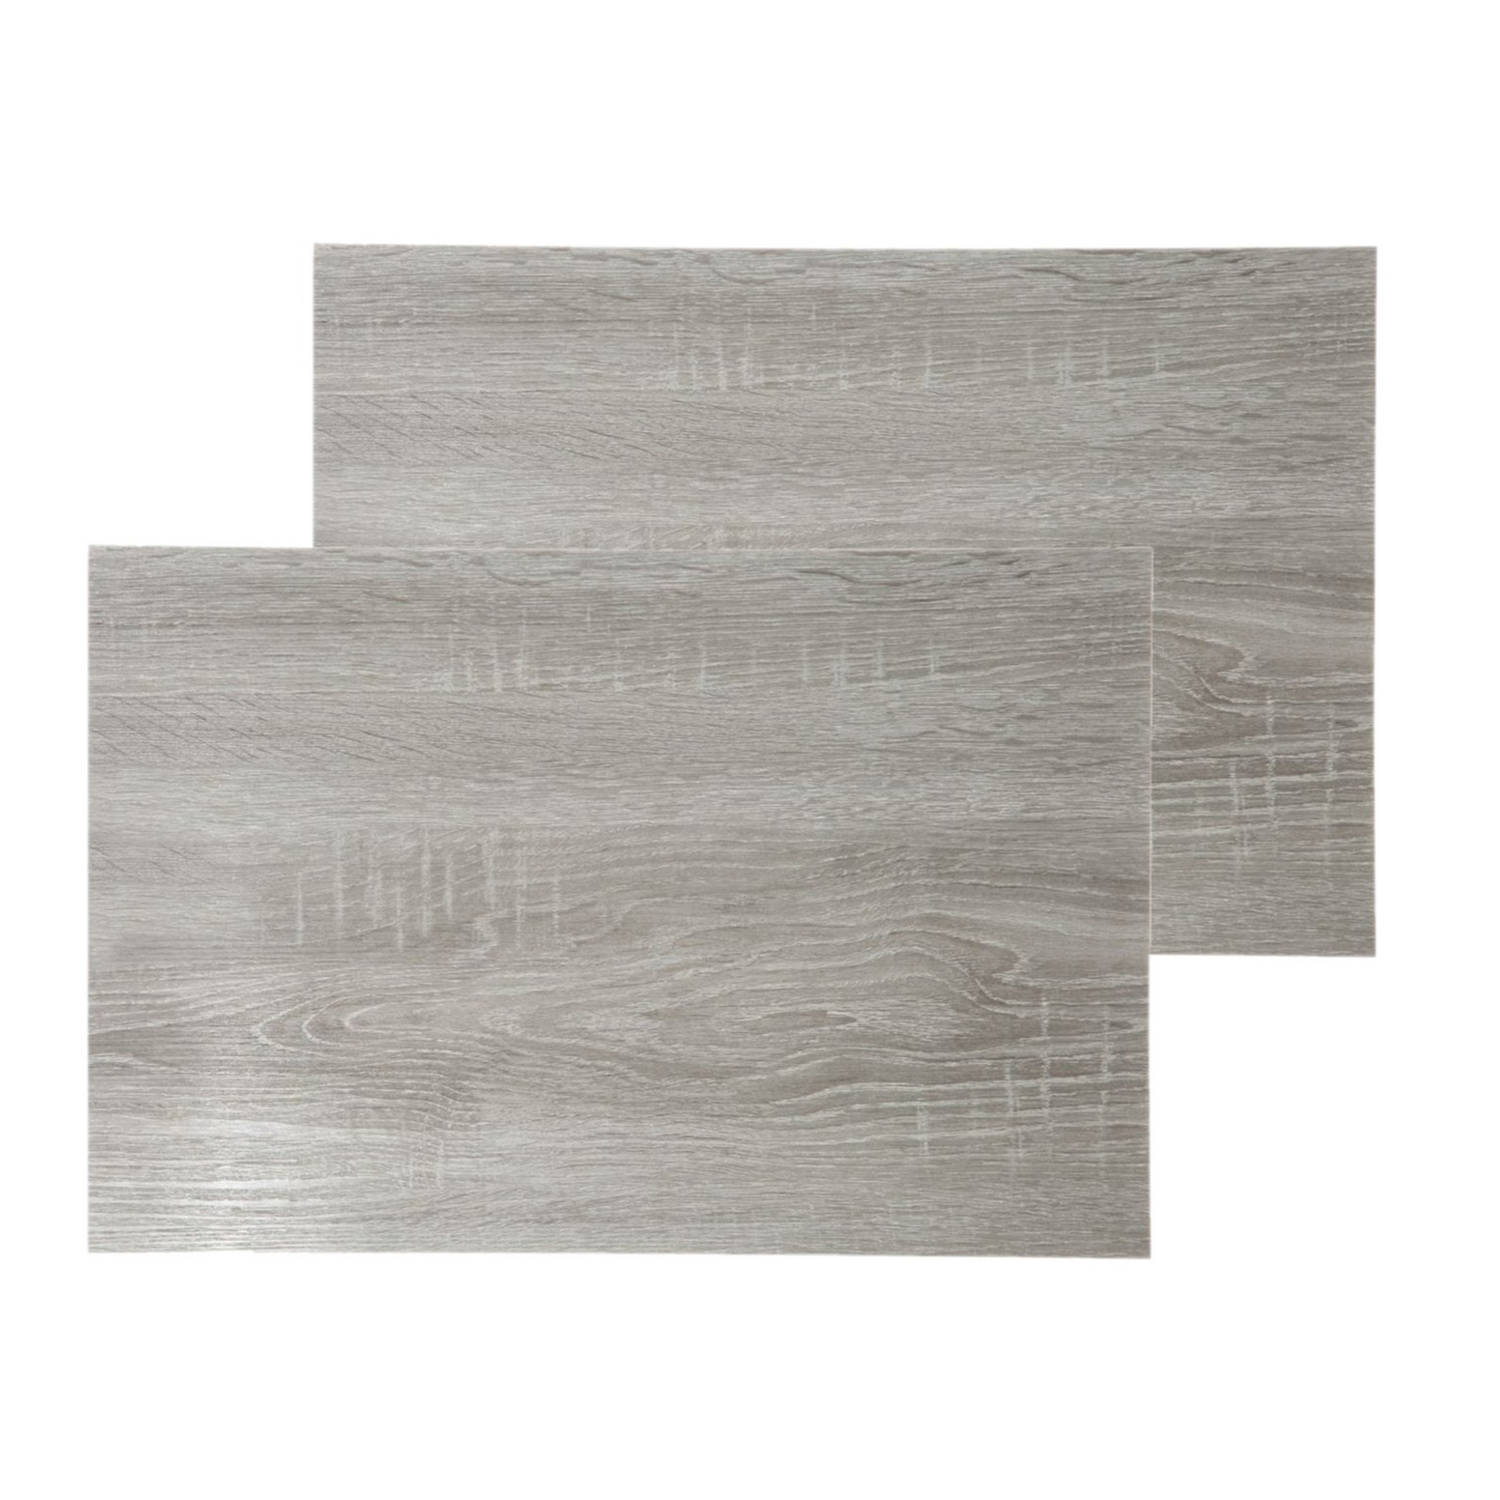 Set van 6x stuks placemats hout print grijs PVC 45 x 30 cm - Placemats